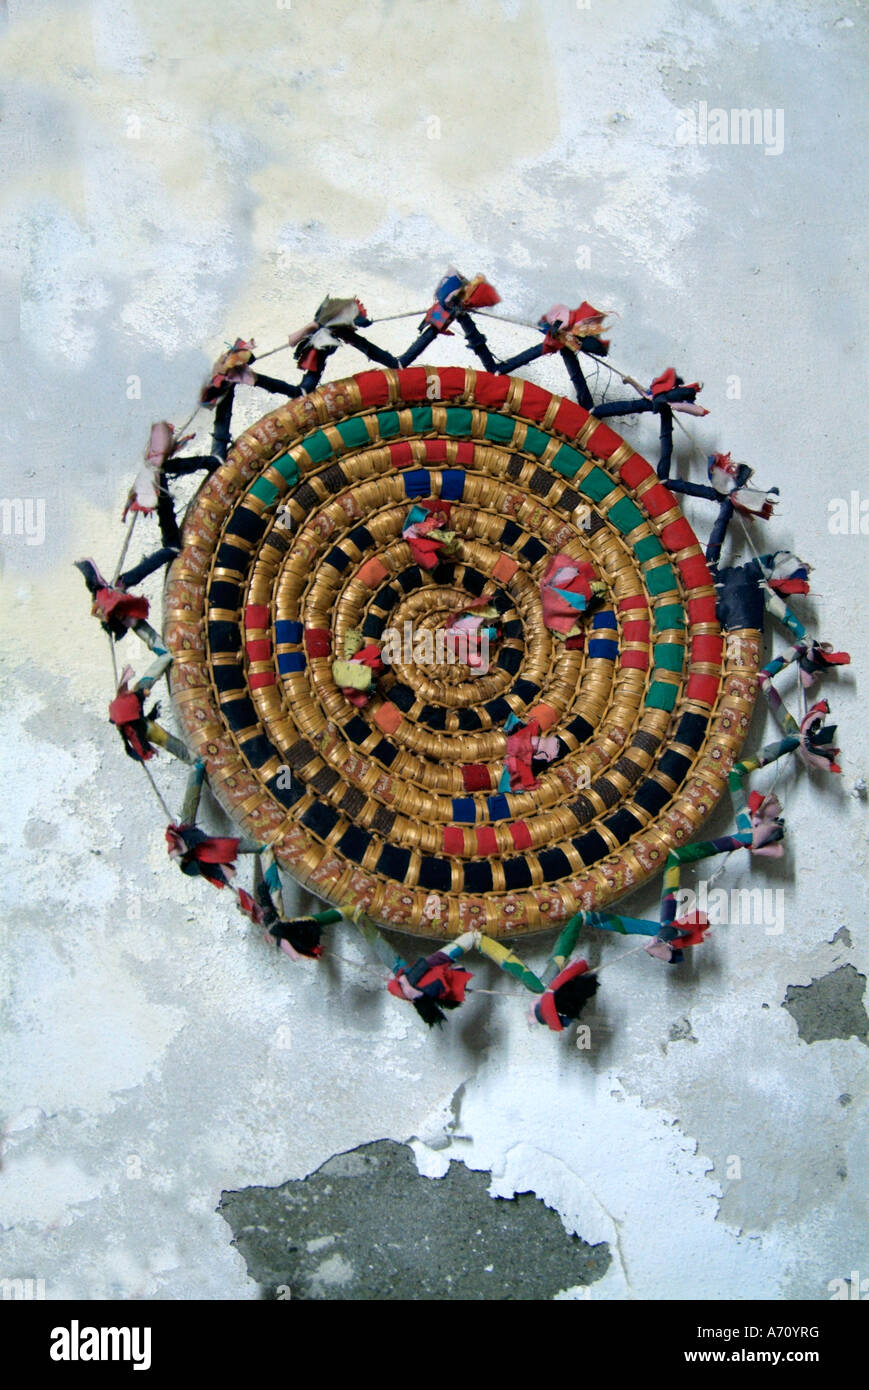 Multi colore colore basket weave tessuto piastra piana tabella mat appendere appeso tipico cerchio etnico spirale circolare parete dipinta di bianco t Foto Stock